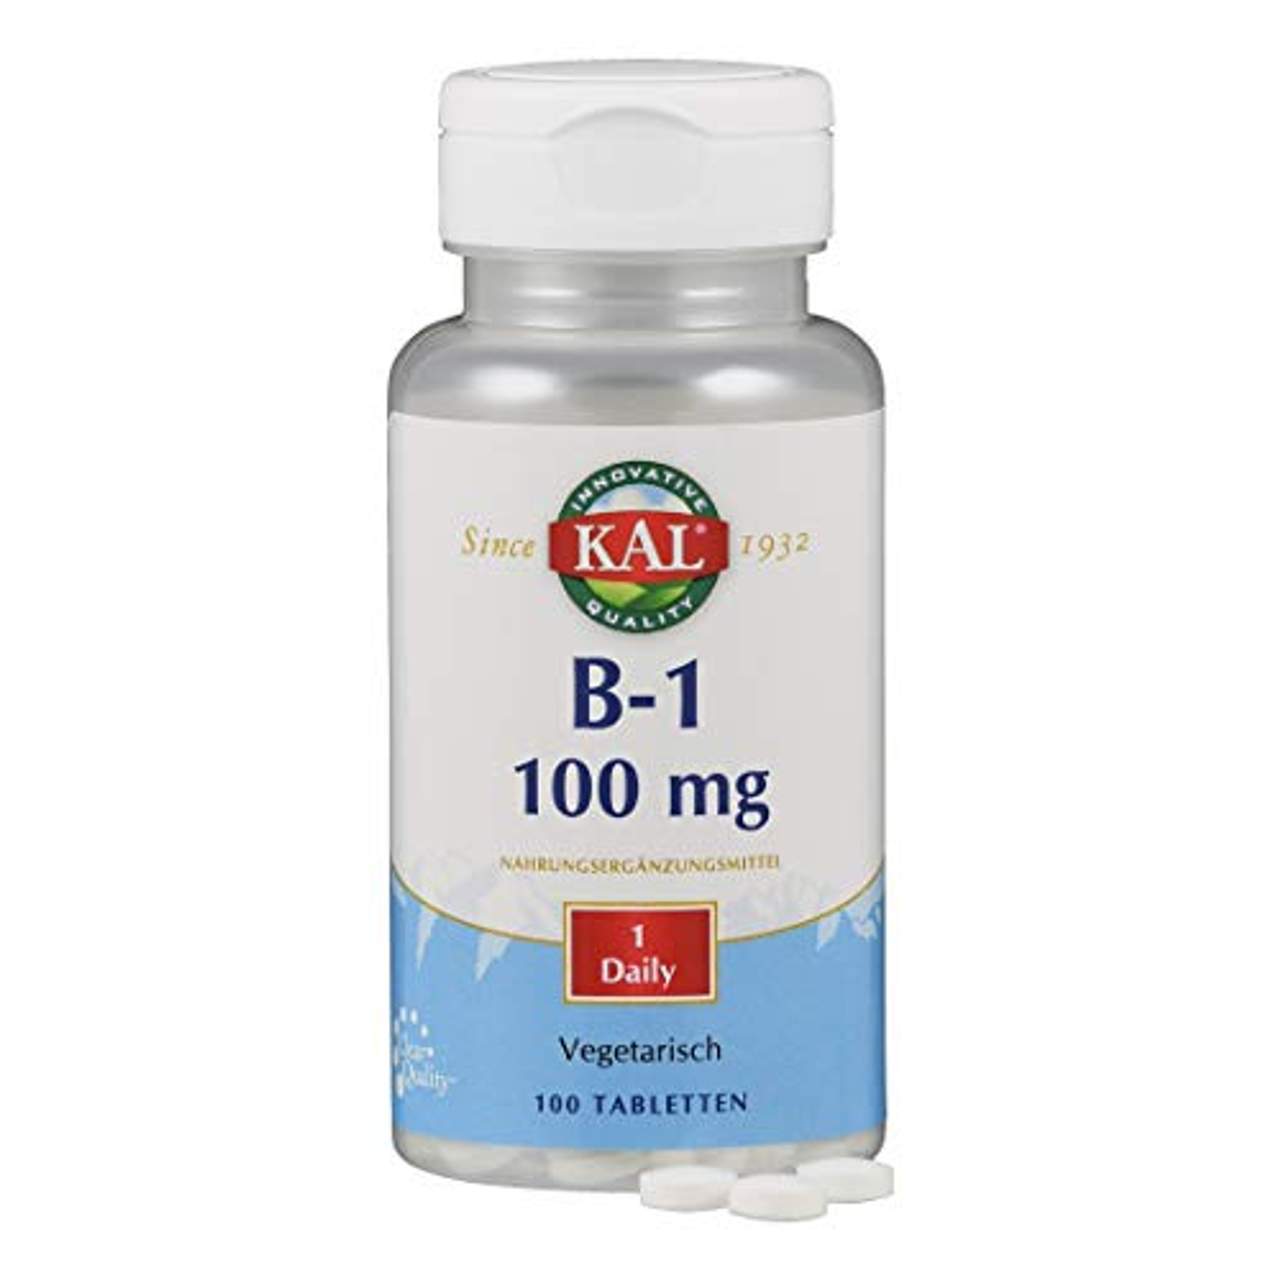 KAL Vitamin B1 100 mg